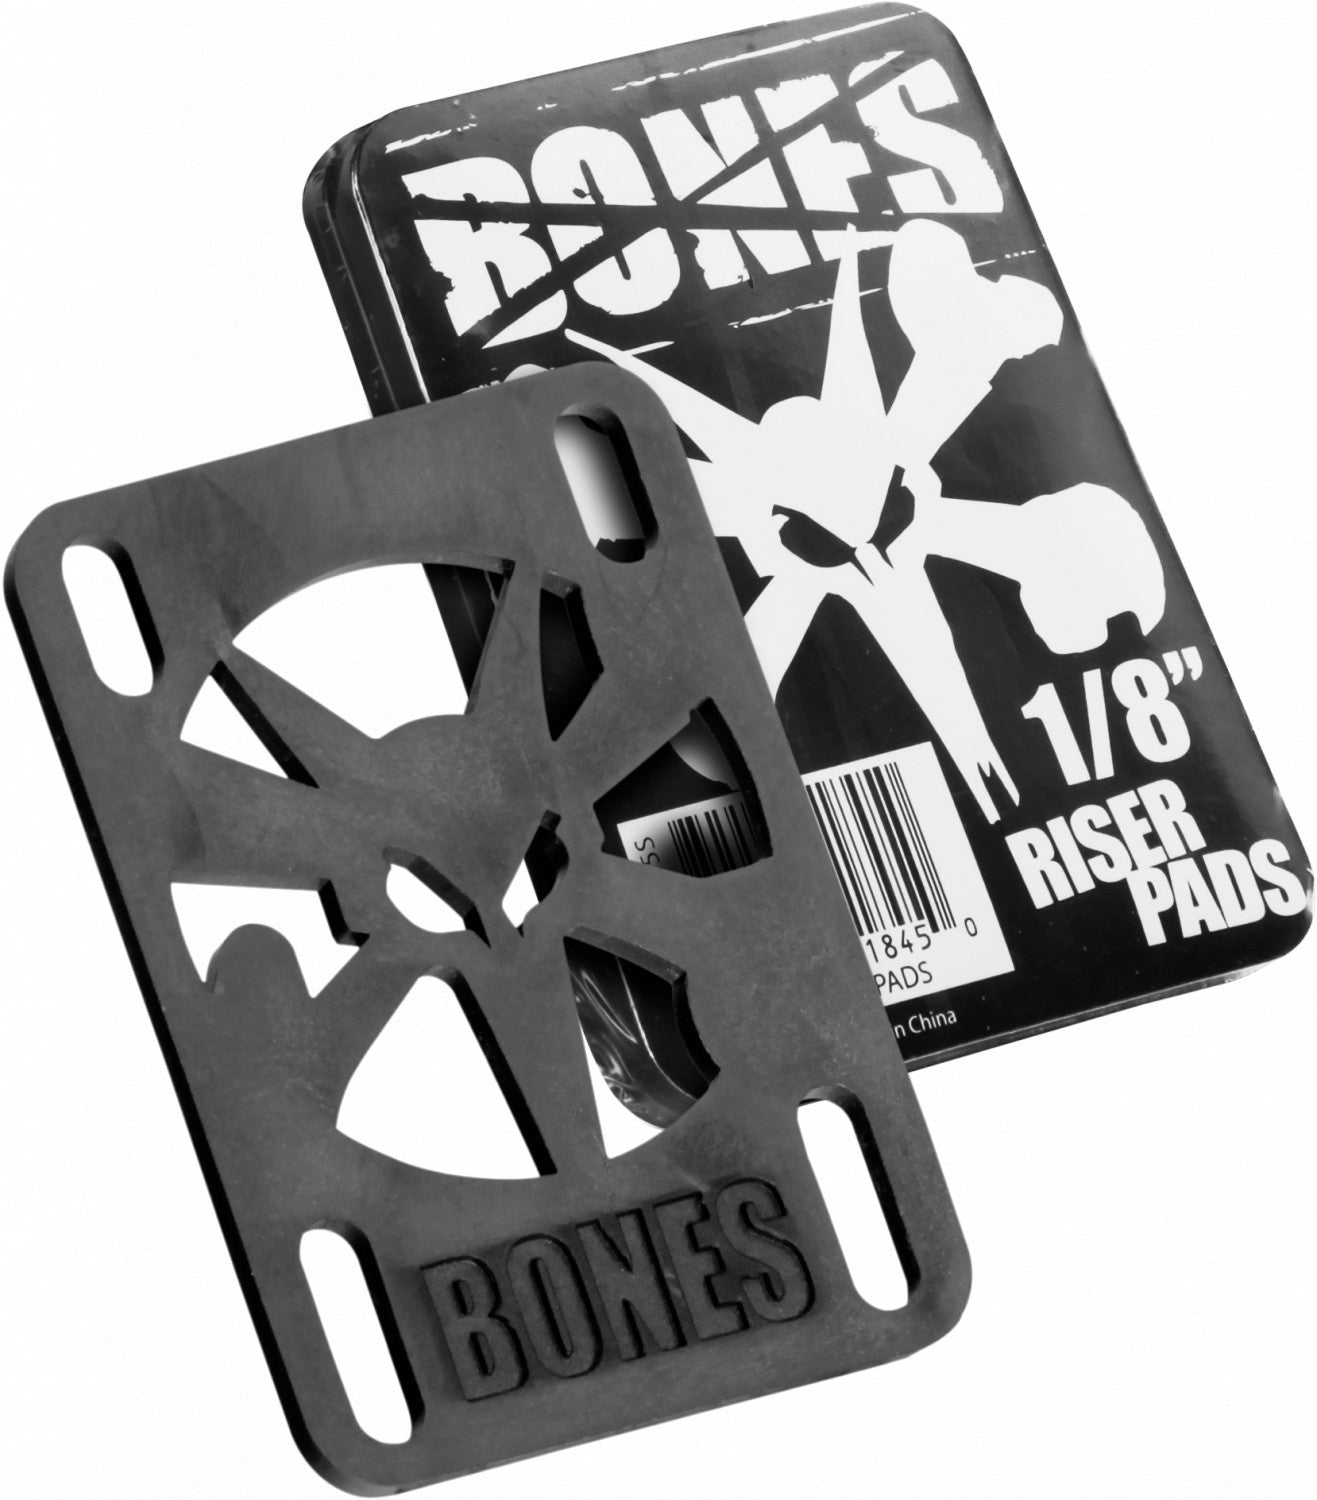 Bones Hard Riser Pads 0.125" (1/8th)